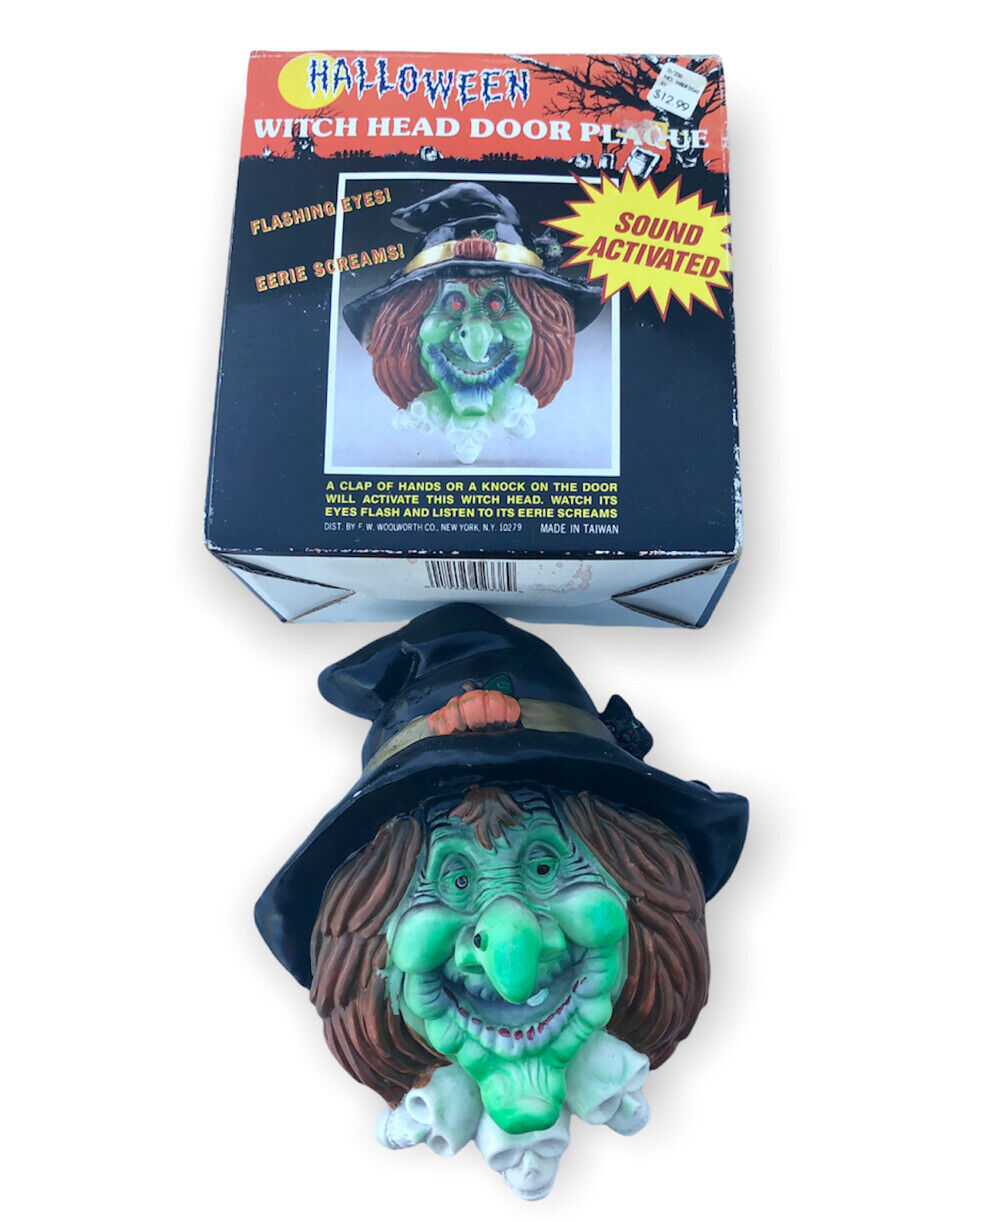 Vintage Woolworth’s Halloween Witch Head Door Plaque- Sound Activated